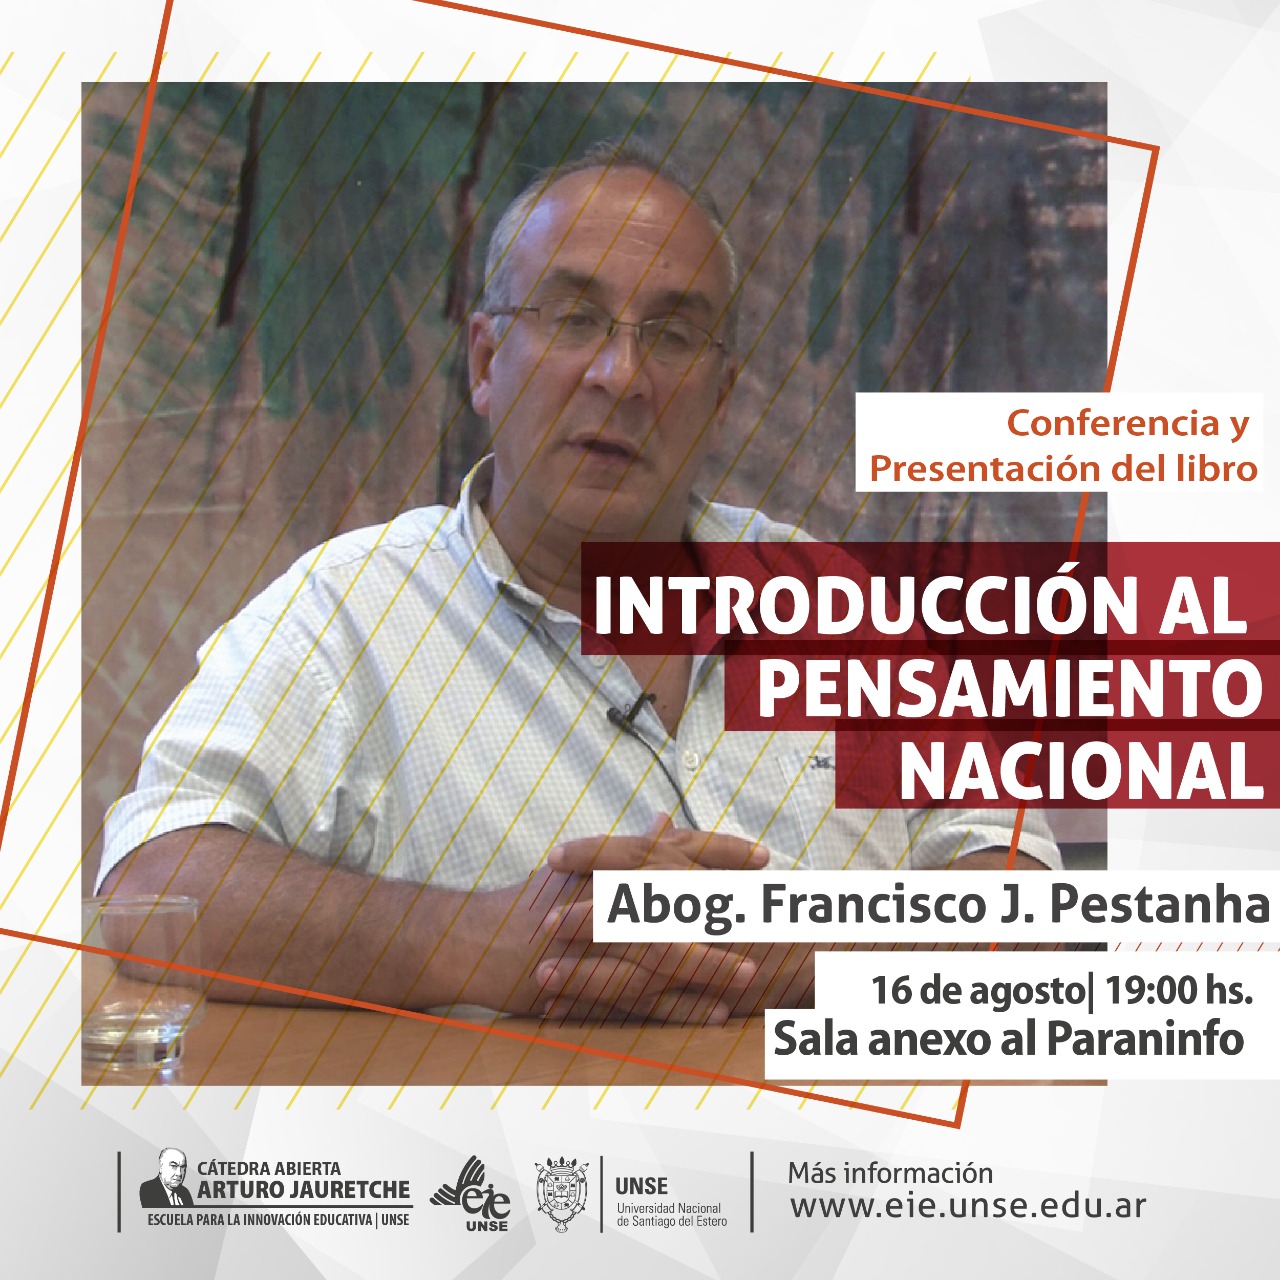 Conferencia y presentación del libro "Introducción al pensamiento nacional", del Lic. Francisco Pestanha